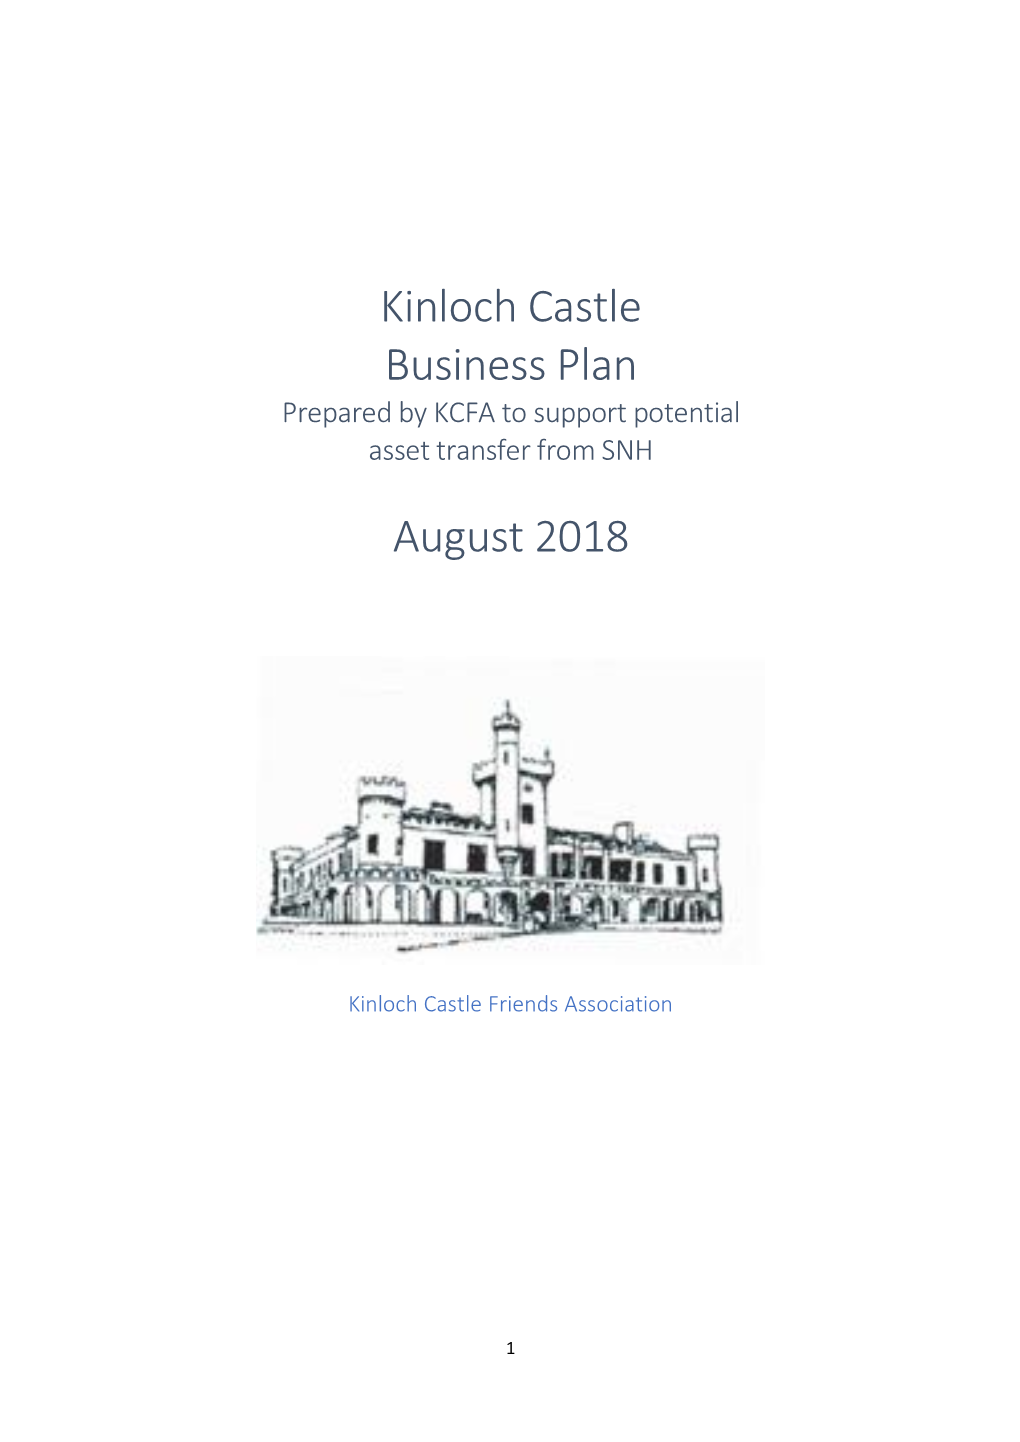 Kinloch Castle Business Plan August 2018